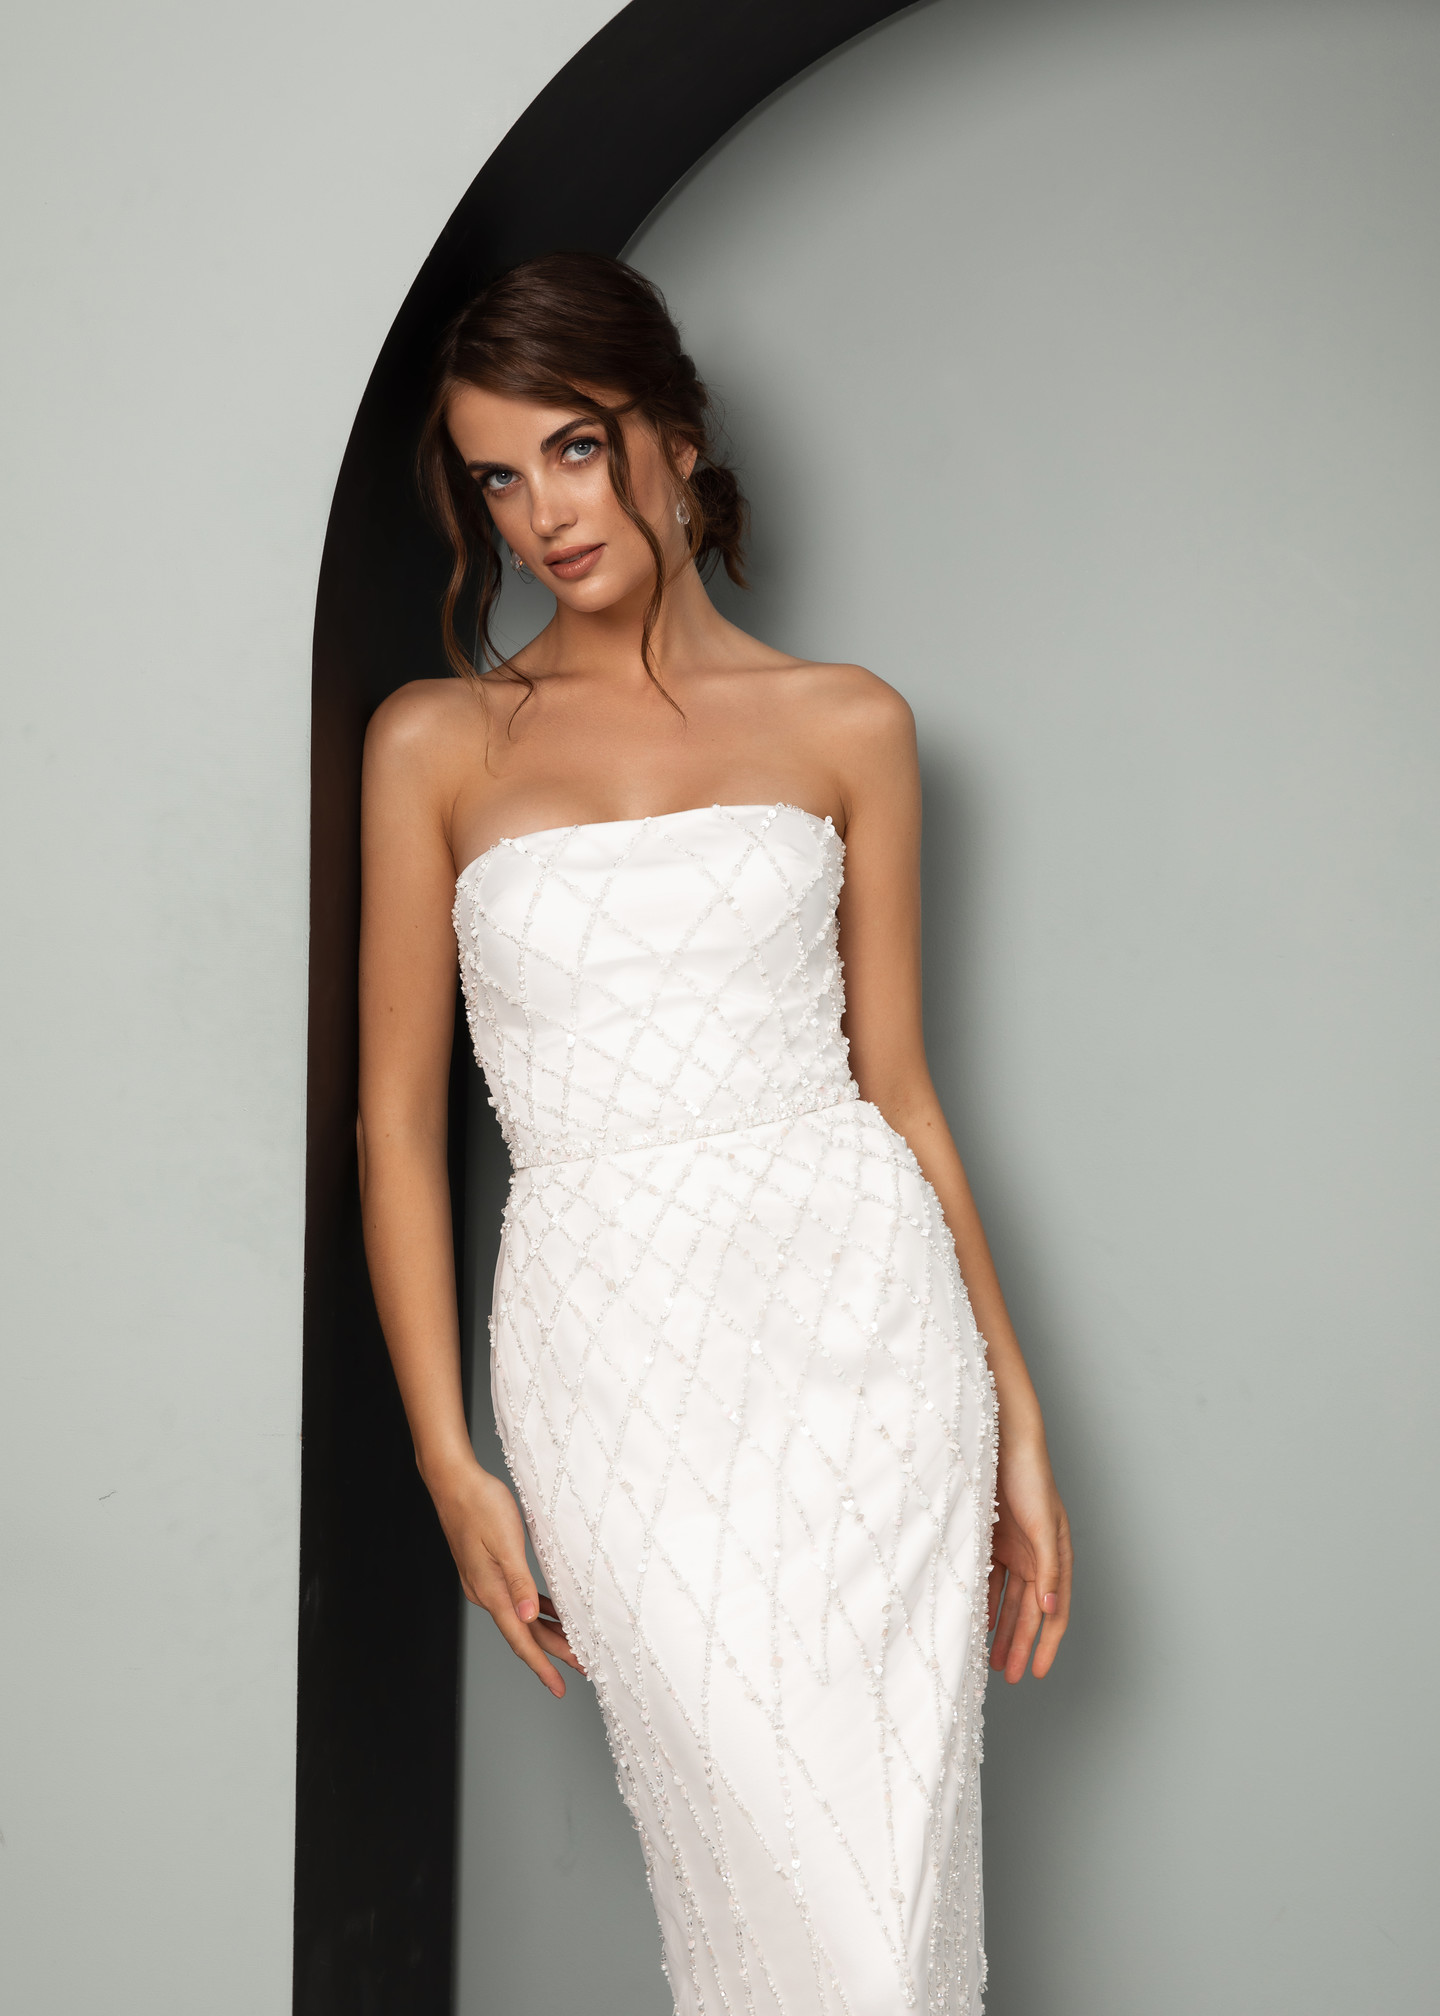 Платье Грейс, 2021, одежда, платье, свадебное, молочно-белый, вышивка, прямой силуэт